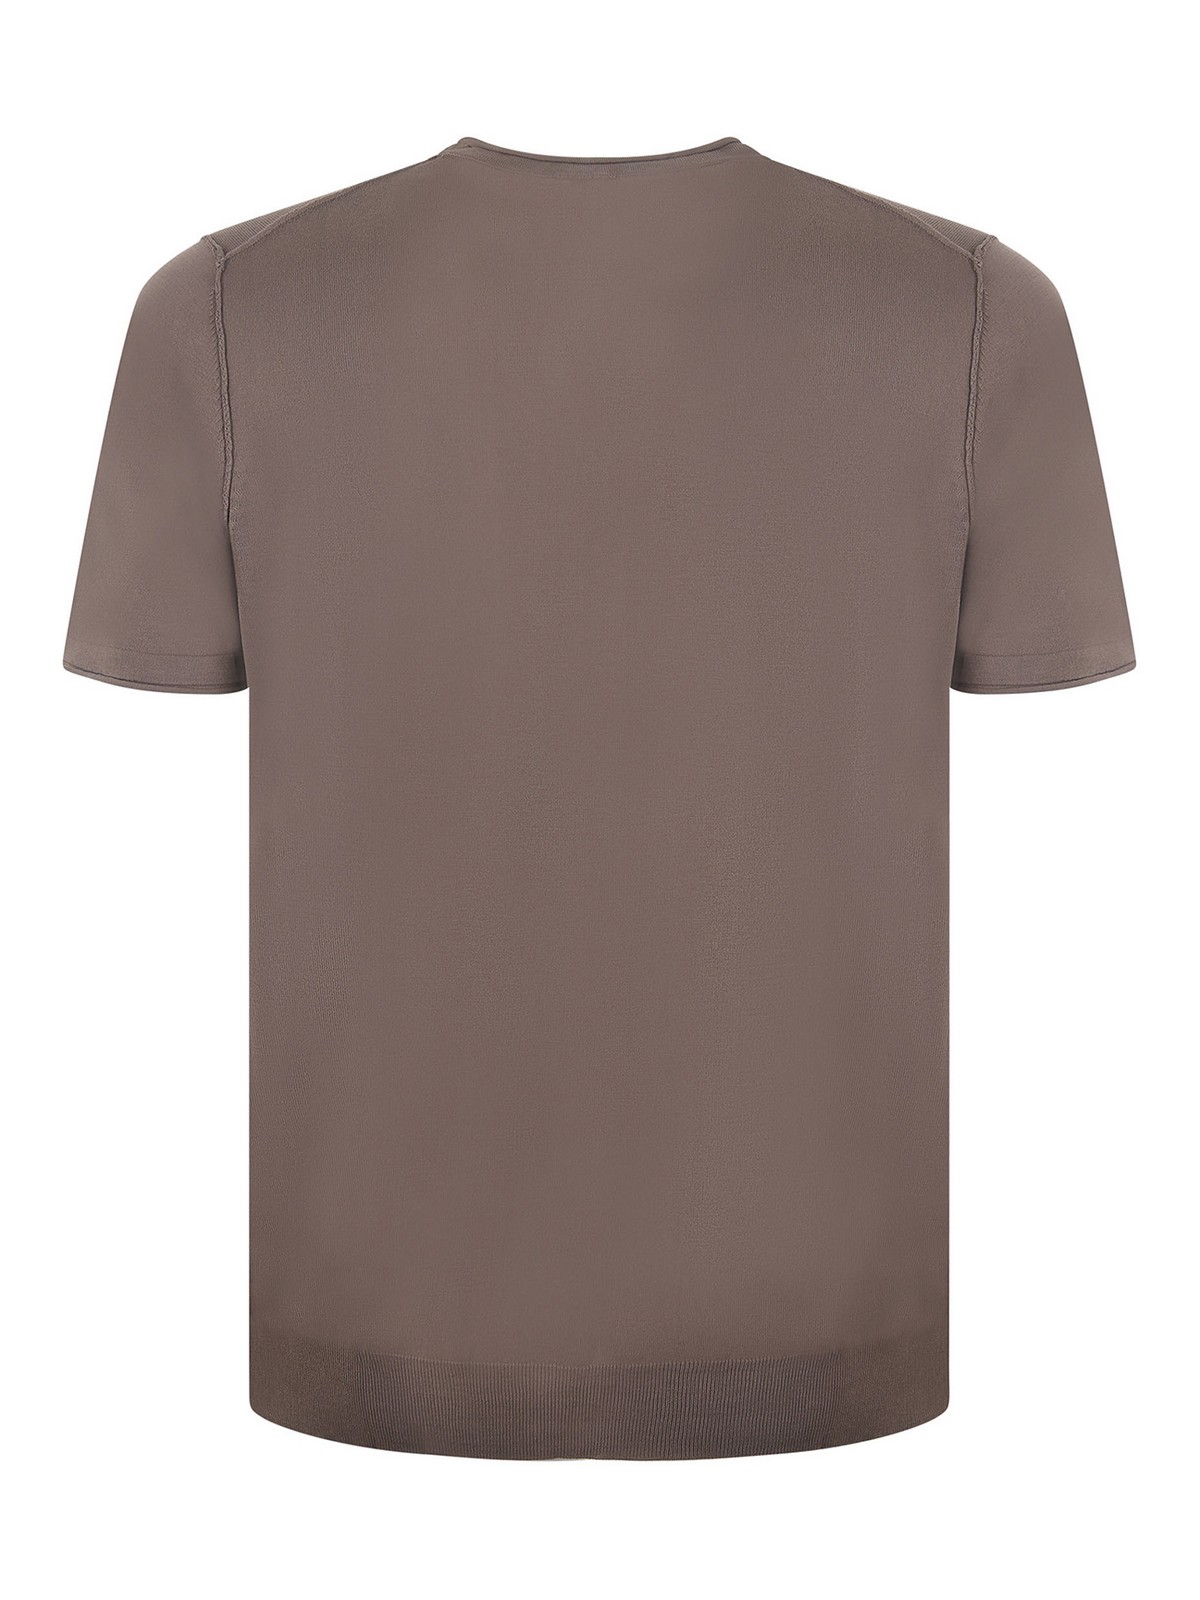 Shop Jeordie's Camiseta - Marrón In Brown